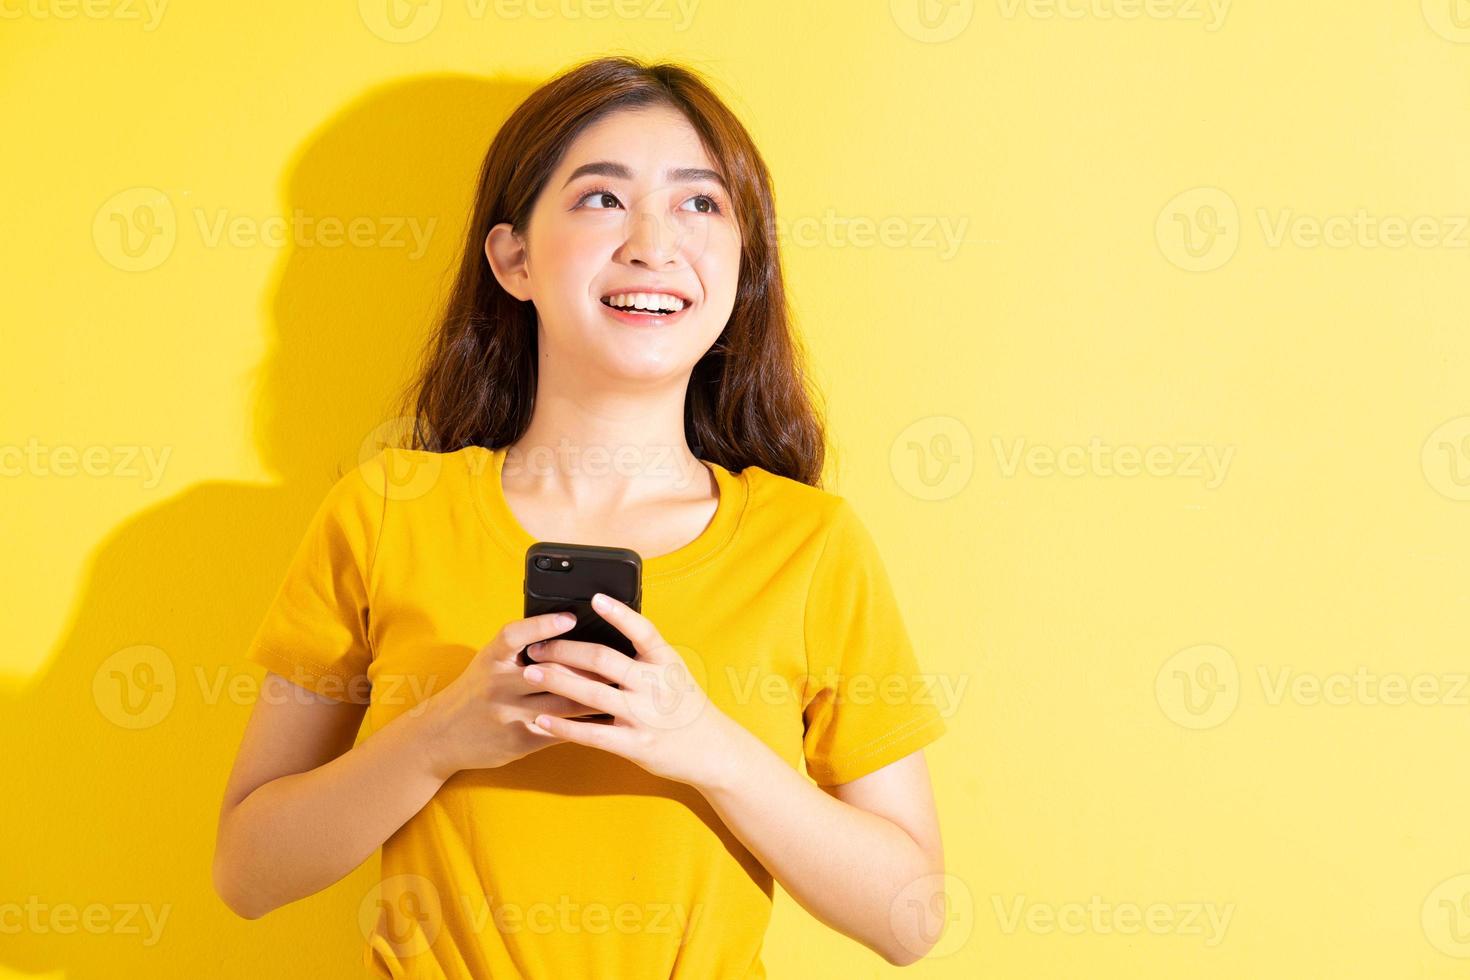 jovem asiática usando smartphone em fundo amarelo foto